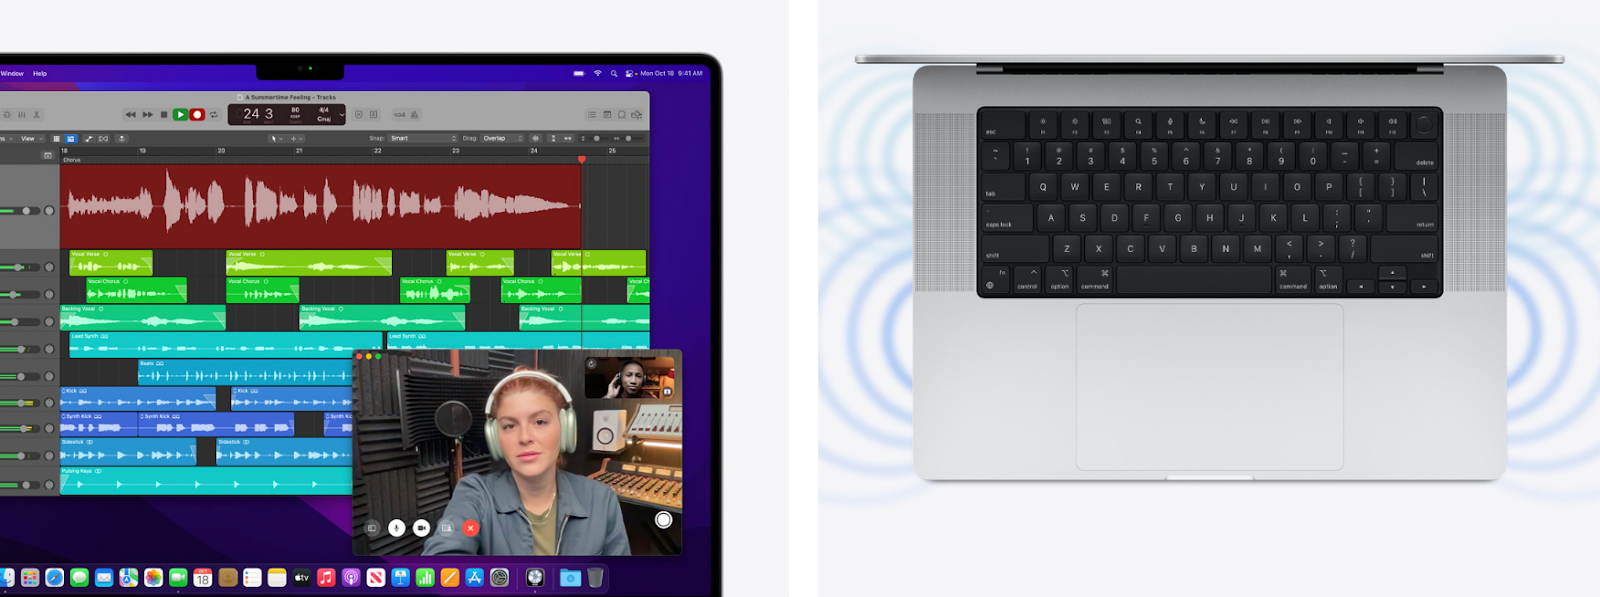 MacBook Pro M1 2021 nâng cấp hệ thống âm thanh và micro giúp người dùng trải nghiệm giải trí, gọi thoại “đã tai